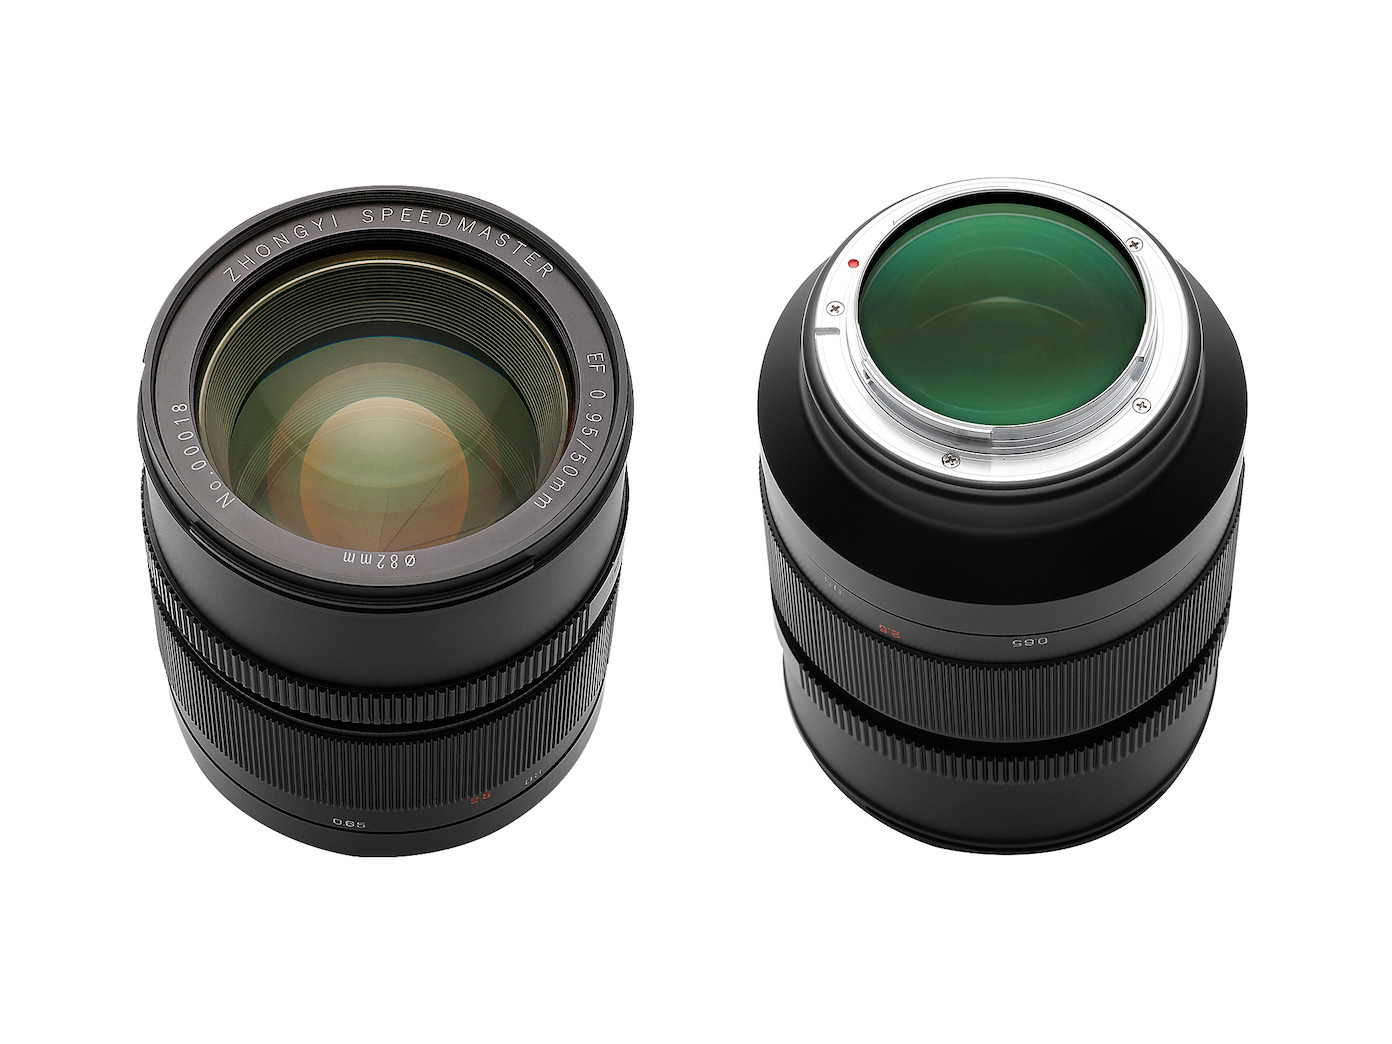 ZY Optics ra mắt ống kính 50mm F0.95 ‘Speedmaster’ dành cho Canon ngàm EF